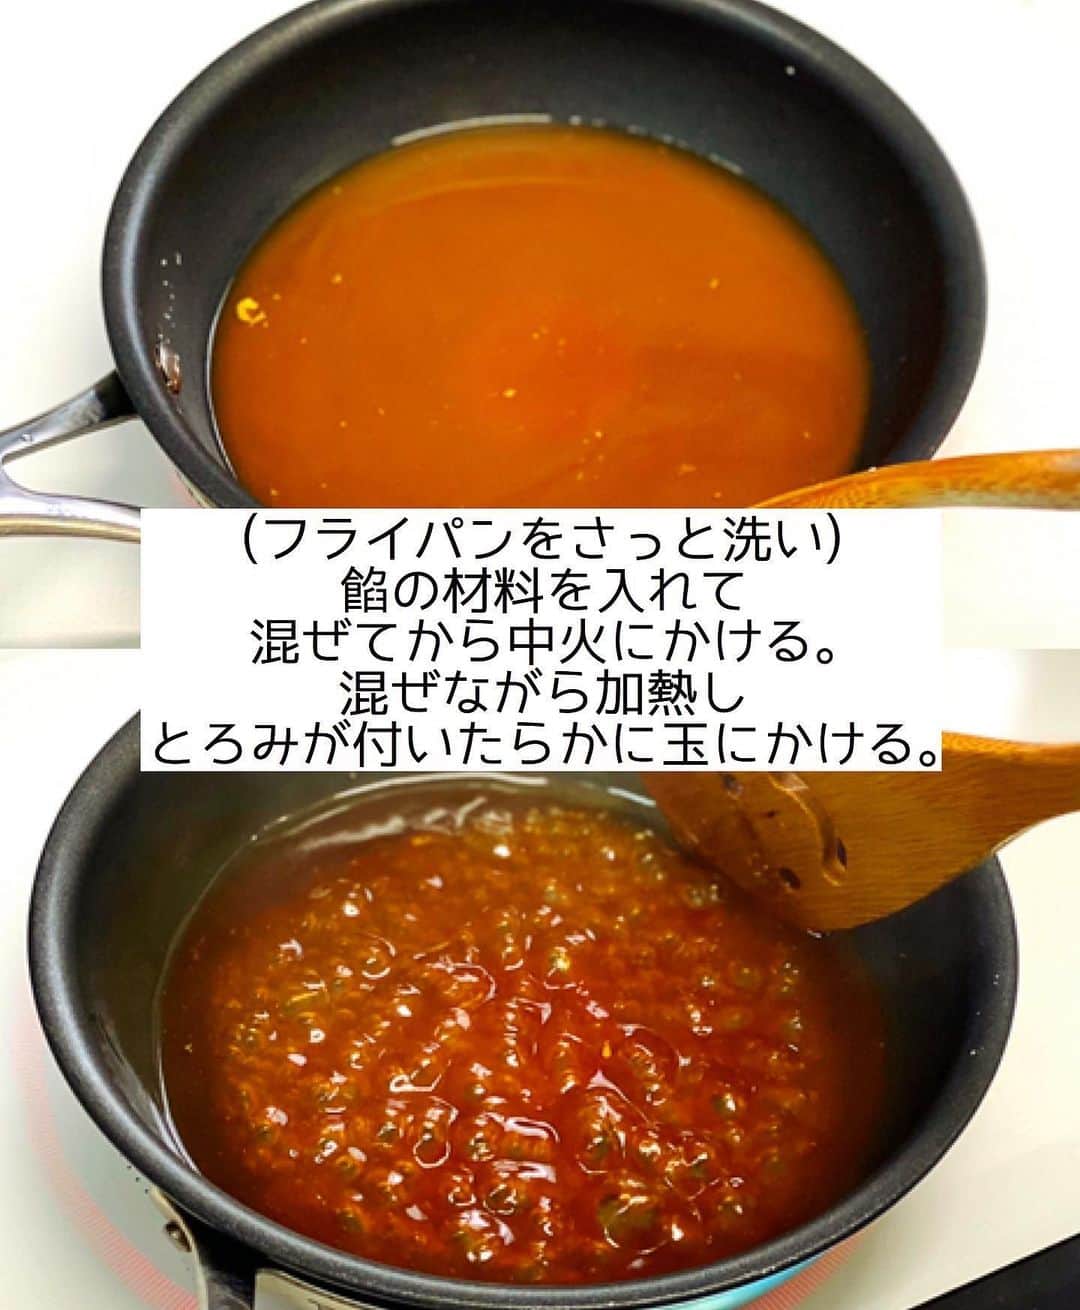 Mizuki【料理ブロガー・簡単レシピ】さんのインスタグラム写真 - (Mizuki【料理ブロガー・簡単レシピ】Instagram)「・﻿ 【#レシピ 】ーーーーーーーーー﻿ ♡カニカマdeふわとろかに玉♡﻿ (2品献立提案あり)﻿ ーーーーーーーーーーーーーーー﻿ ﻿ ﻿ ﻿ おはようございます(*^^*)﻿ ﻿ 今日ご紹介させていただくのは﻿ カニカマで作るお手軽かに玉♡﻿ 甘酢あんとふわとろたまごが﻿ たまらない美味しさですよ〜♩﻿ ﻿ 作り方は超簡単(*´艸`)﻿ かに玉も甘酢あんも﻿ フライパンひとつで作れます♡﻿ しかも面倒なとろみ付けはなし！﻿ ﻿ コスパ抜群&食べ応えもあるので﻿ よかったらお試し下さいね(*^^*)﻿ ﻿ (すみません💦﻿ 工程写真抜けたので再投稿です😭)﻿ ﻿ ﻿ ﻿ ＿＿＿＿＿＿＿＿＿＿＿＿＿＿＿＿＿＿＿＿﻿ 【2人分】﻿ 卵...4個﻿ 塩こしょう...少々﻿ カニカマ...100g﻿ 長ねぎ...1/2本﻿ ごま油...大1.5﻿ ●水...100ml﻿ ●砂糖・醤油・酢...各大1﻿ ●片栗粉...大1/2﻿ ●鶏がらスープ...小1/2﻿ (好みで)白髪ねぎ...適量﻿ ﻿ 1.卵は溶きほぐして塩こしょうを混ぜる。カニカマは割く。長ねぎは斜め薄切りにする。﻿ 2.小さめのフライパンにごま油を強火で熱し、カニカマとねぎをさっと炒める。卵液を流し入れて大きく混ぜ、半熟になったら形をととのえて器に盛る。﻿ 3.フライパンをさっと洗い、●を入れて混ぜてから中火にかける。混ぜながら加熱し、とろみが付いたら2にかける。仕上げに白髪ねぎをトッピングする。﻿ ￣￣￣￣￣￣￣￣￣￣￣￣￣￣￣￣￣￣￣￣﻿ ﻿ ﻿ ﻿ 《ポイント》﻿ ♦︎今回は直径20cmのフライパンを使用しています♩﻿ ♦︎フライパンにひとまわり大きめの器を被せ、ひっくり返して盛り付けると◎﻿ ♦︎工程3では、''温度を下げる為に''フライパンを洗っています☆綺麗にする必要はありません♩﻿ ﻿ ﻿ ﻿ ﻿ ﻿ ﻿ ﻿ ＿＿＿＿＿＿＿＿＿＿＿＿＿＿＿＿﻿ 🥣🥣🥣 2品献立提案 🥣🥣🥣﻿ ￣￣￣￣￣￣￣￣￣￣￣￣￣￣￣￣﻿ 【合間に作れるおすすめ副菜】﻿ >レンコンとツナの和風和え(P.100)﻿ >豚にらもやしスープ(P.30)﻿ (#Mizukiの2品献立 より)﻿ ﻿ 【献立の段取り】﻿ 副菜をレンジに入れてから﻿ メインに取り掛かる🥢﻿ ￣￣￣￣￣￣￣￣￣￣￣￣￣￣￣￣﻿ ﻿ ﻿ ﻿ ﻿ ﻿ ⭐️発売中⭐️3刷重版が決まりました😭﻿ 本当にありがとうございます(涙)﻿ _____________________________________﻿ \15分でいただきます/﻿ 📕#Mizukiの2品献立 📕﻿ (9月24日発売・マガジンハウス)﻿ ￣￣￣￣￣￣￣￣￣￣￣￣￣￣￣￣￣﻿ ﻿ 忙しい私たちには﻿ 2品くらいがちょうどいい！﻿ 『しんどくない献立、考えました』﻿ ￣￣￣￣￣￣￣￣￣￣￣￣￣￣￣￣﻿ ﻿ ーーーーーPART.1 ーーーーー﻿ 【Mizukiのお墨つき！２品献立ベスト10】﻿ 約15分でできる10献立をご紹介！﻿ メインは全部フライパン﻿ 副菜はレンチンor混ぜるだけ♡﻿ ﻿ ーーーーーPART.2 ーーーーー﻿ 【フライパンひとつ！今夜のメインおかず】﻿ 献立の主役になる肉や魚のおかず50品！﻿ Part3の副菜と組み合わせれば﻿ 献立のバリエーションが広がりますよ♩﻿ ﻿ ーーーーー PART.3 ーーーーー﻿ 【合間に作れる！ 野菜別かんたん副菜】﻿ レンチンor和えるだけの副菜レシピを﻿ 素材別にたっぷり収録♩﻿ ﻿ ーーーーー番外編ーーーーー﻿ 【ひとつで満足！ご飯＆麺】﻿ 【具だくさん！おかずスープ】﻿ 【オーブンいらずのおやつレシピ】﻿ ￣￣￣￣￣￣￣￣￣￣￣￣￣￣￣￣￣￣﻿ (ハイライトにリンク🔗あります💗)﻿ ﻿ ﻿ ﻿ ﻿ ﻿ ＿＿＿＿＿＿＿＿＿＿＿＿＿＿＿＿＿＿﻿ 🔔テレビ出演のお知らせ🔔﻿ 【NHK Eテレ #まる得マガジン 】﻿ 2回目の放送が始まりました✨﻿ (21：55〜 月-木)﻿ 俳優の武田航平さん﻿ (@kouhei_takeda.official )と一緒に﻿ 絶品おやつから意外なランチまで﻿ たくさん作らせていただきますよ♩﻿ ﻿ ＊NHKテキスト発売中📕﻿ ￣￣￣￣￣￣￣￣￣￣￣￣￣￣￣￣￣￣﻿ ﻿ ﻿ ﻿ ﻿ ﻿ ＿＿＿＿＿＿＿＿＿＿＿＿＿＿＿＿＿＿﻿ レシピを作って下さった際や﻿ レシピ本についてのご投稿には﻿ タグ付け( @mizuki_31cafe )して﻿ お知らせいただけると嬉しいです😊💕﻿ ￣￣￣￣￣￣￣￣￣￣￣￣￣￣￣￣￣￣﻿ ﻿ ﻿ ﻿ ﻿ #カニカマ#卵#かに玉#甘酢あん#Mizuki#簡単レシピ#時短レシピ#節約レシピ#料理#フーディーテーブル#マカロニメイト#おうちごはん#デリスタグラマー#料理好きな人と繋がりたい#食べ物#料理記録#おうちごはんlover#写真好きな人と繋がりたい#foodpic#cooking#recipe#lin_stagrammer#foodporn#yummy#f52grams」11月21日 8時07分 - mizuki_31cafe